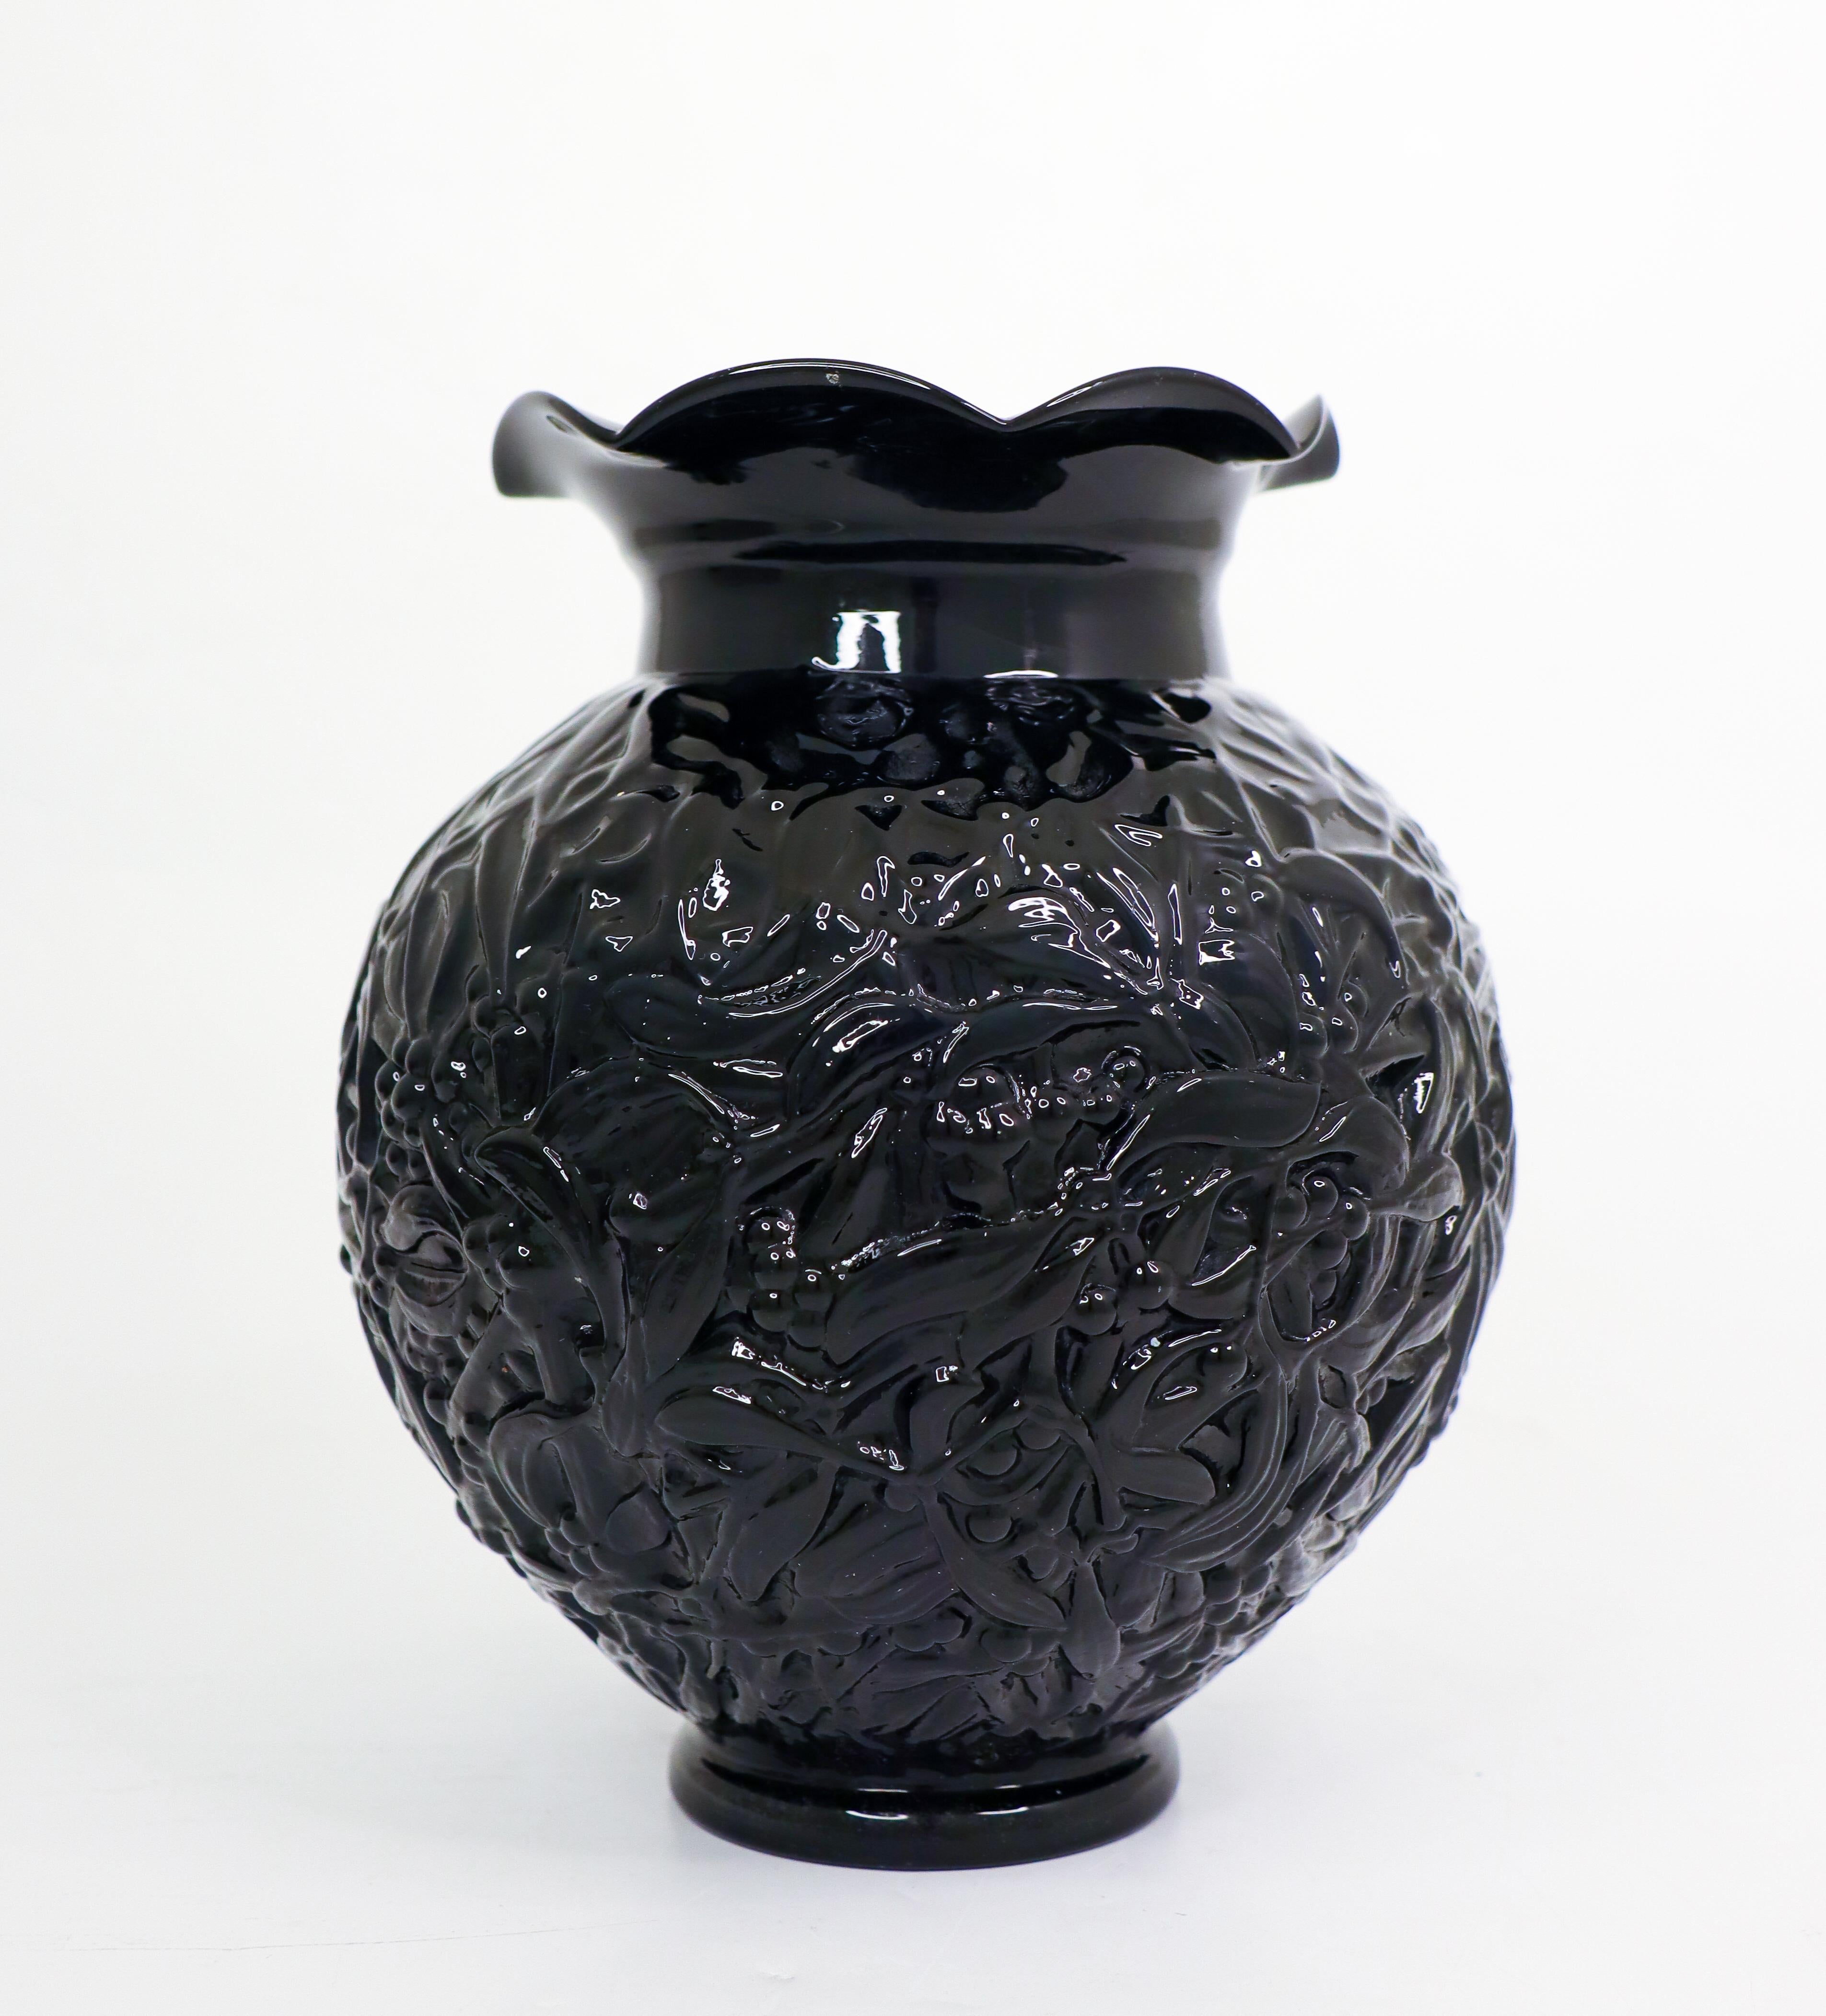 Un joli vase en verre moulé noir conçu dans les années 1930 par Edvin Ollers et produit à la verrerie d'Elme en Suède. Le vase mesure 20,5 cm de haut et est en excellent état. Il n'est pas marqué. 